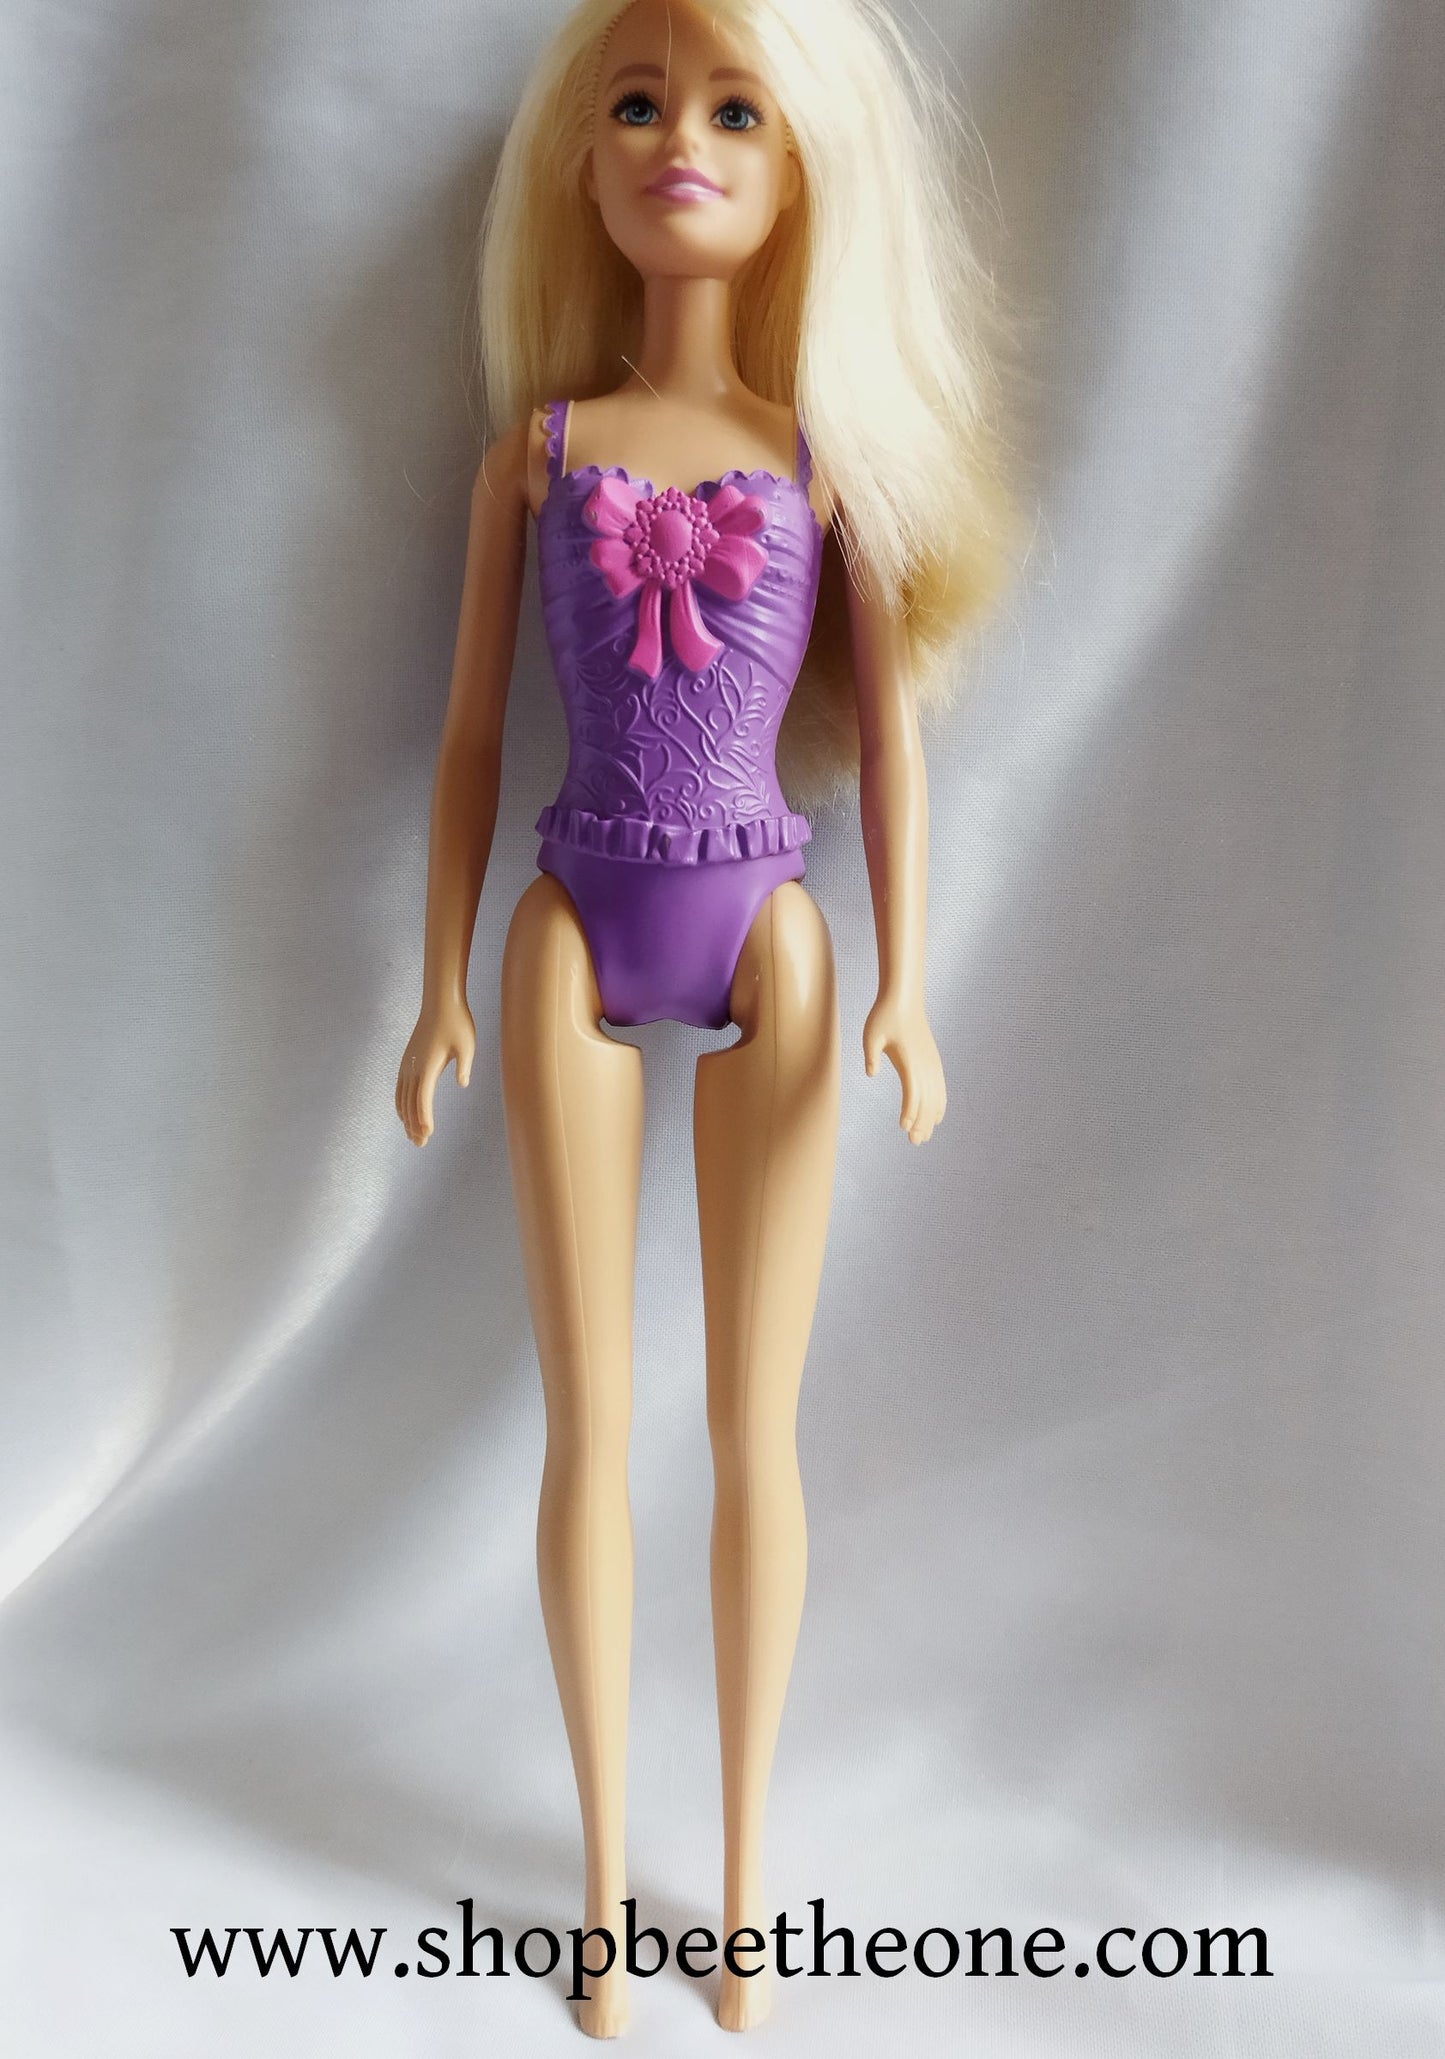 Barbie Princesse GGJ94 - Mattel 2019 - Poupée - Vêtement - Accessoire